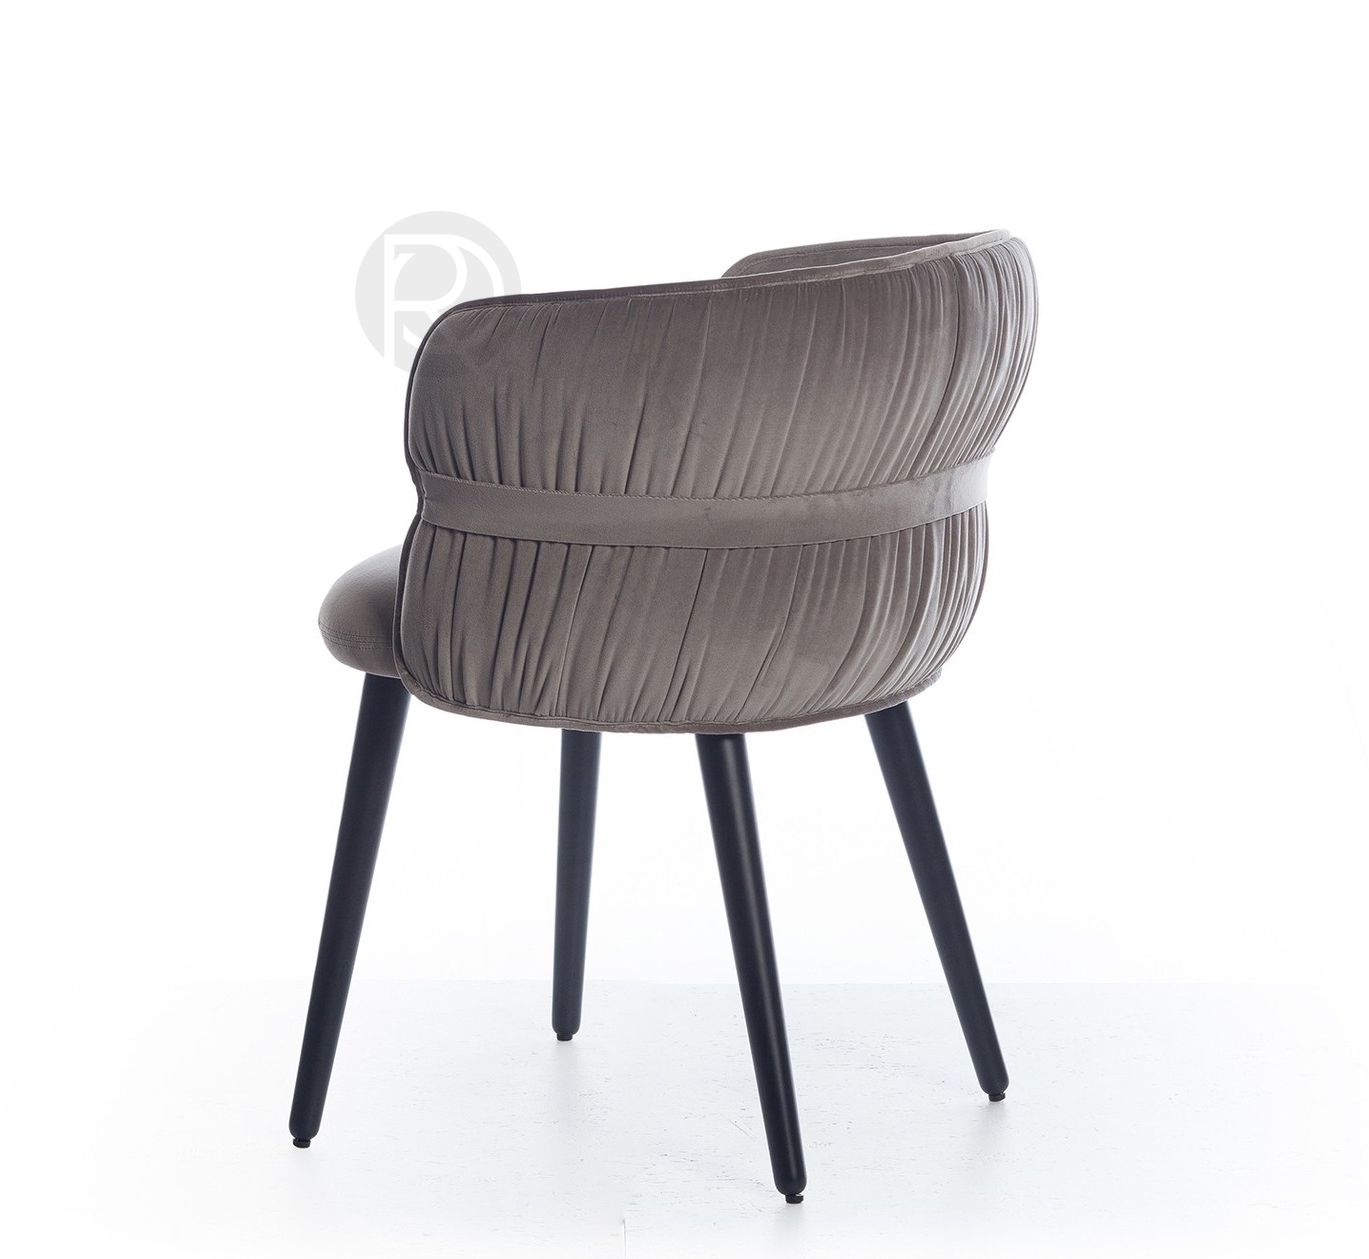 Designer chair POTOCCO by Romatti